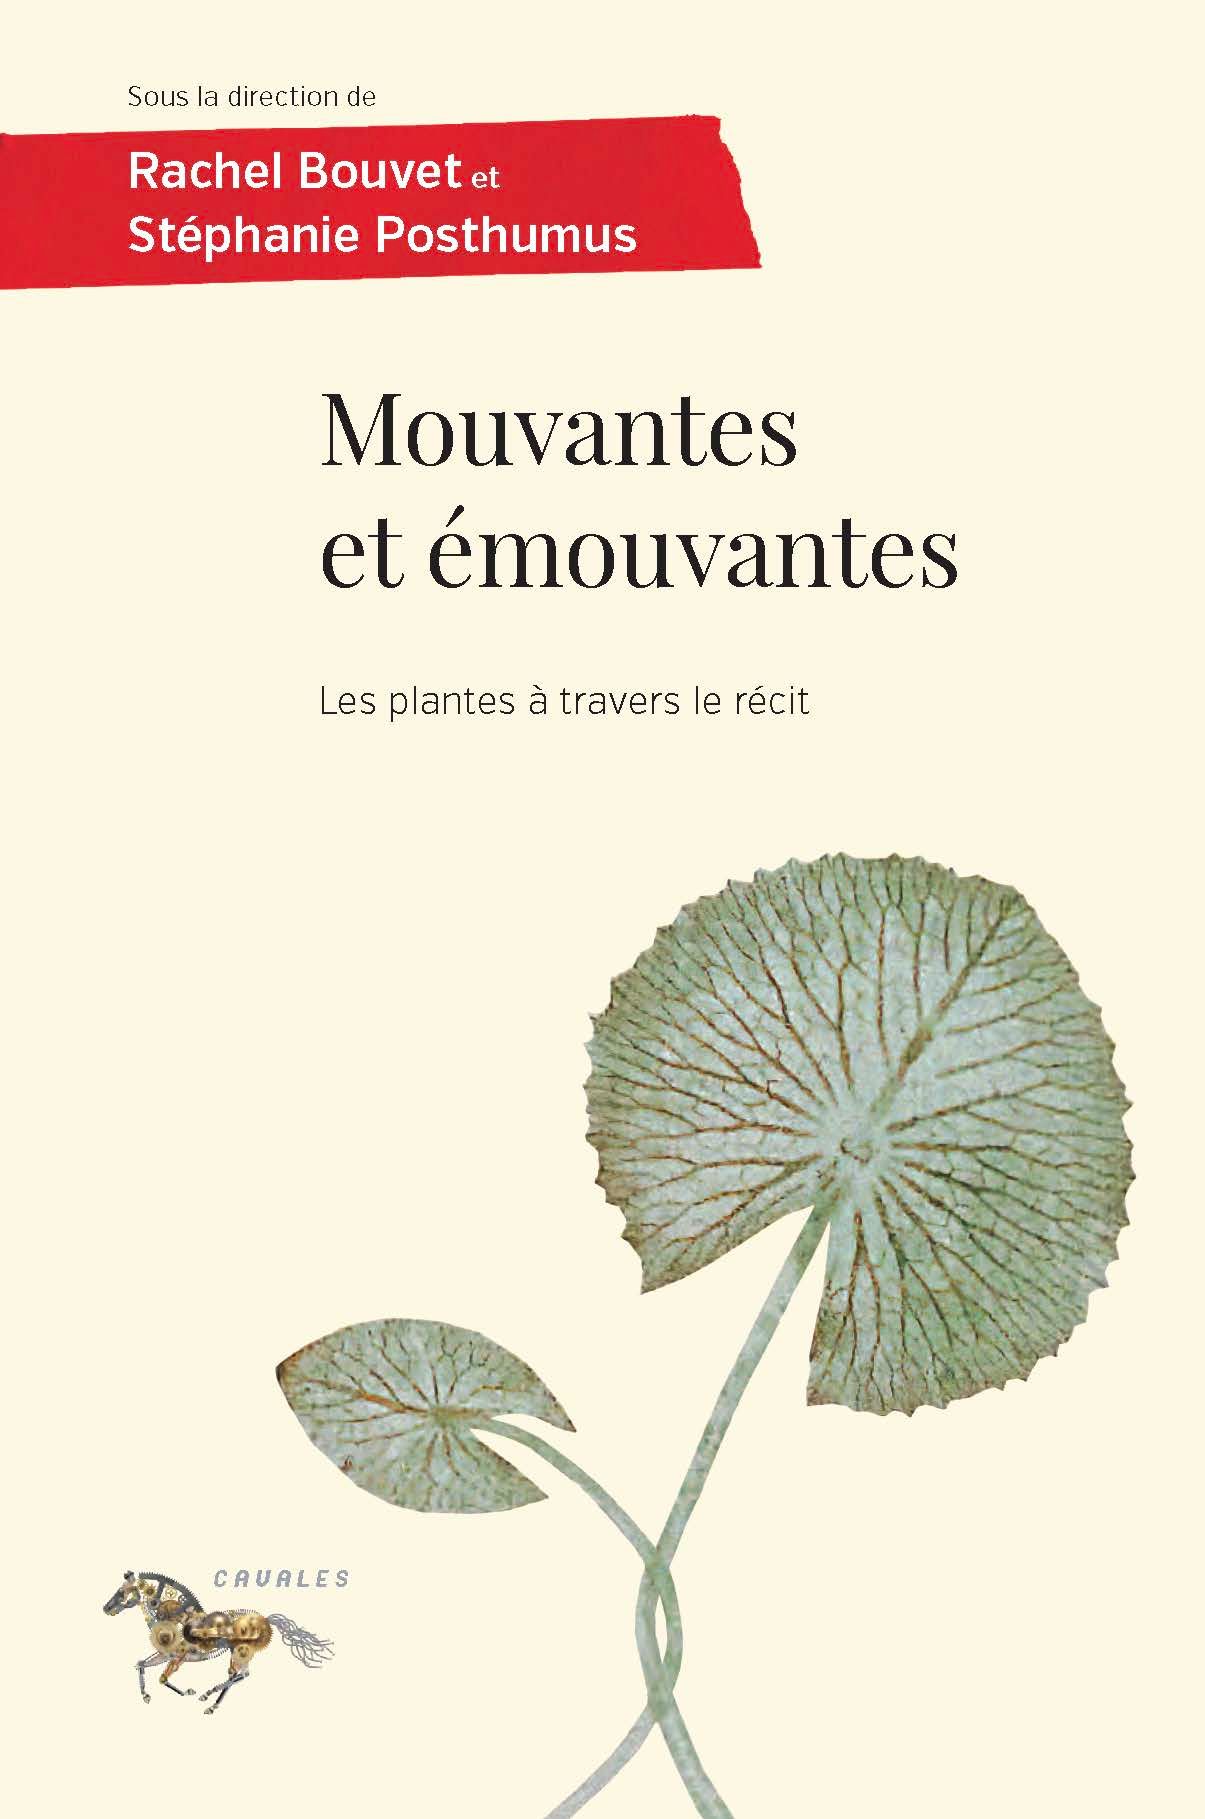 Rachel Bouvet, Stéphanie Posthumus, Mouvantes et émouvantes. Les plantes à travers le récit